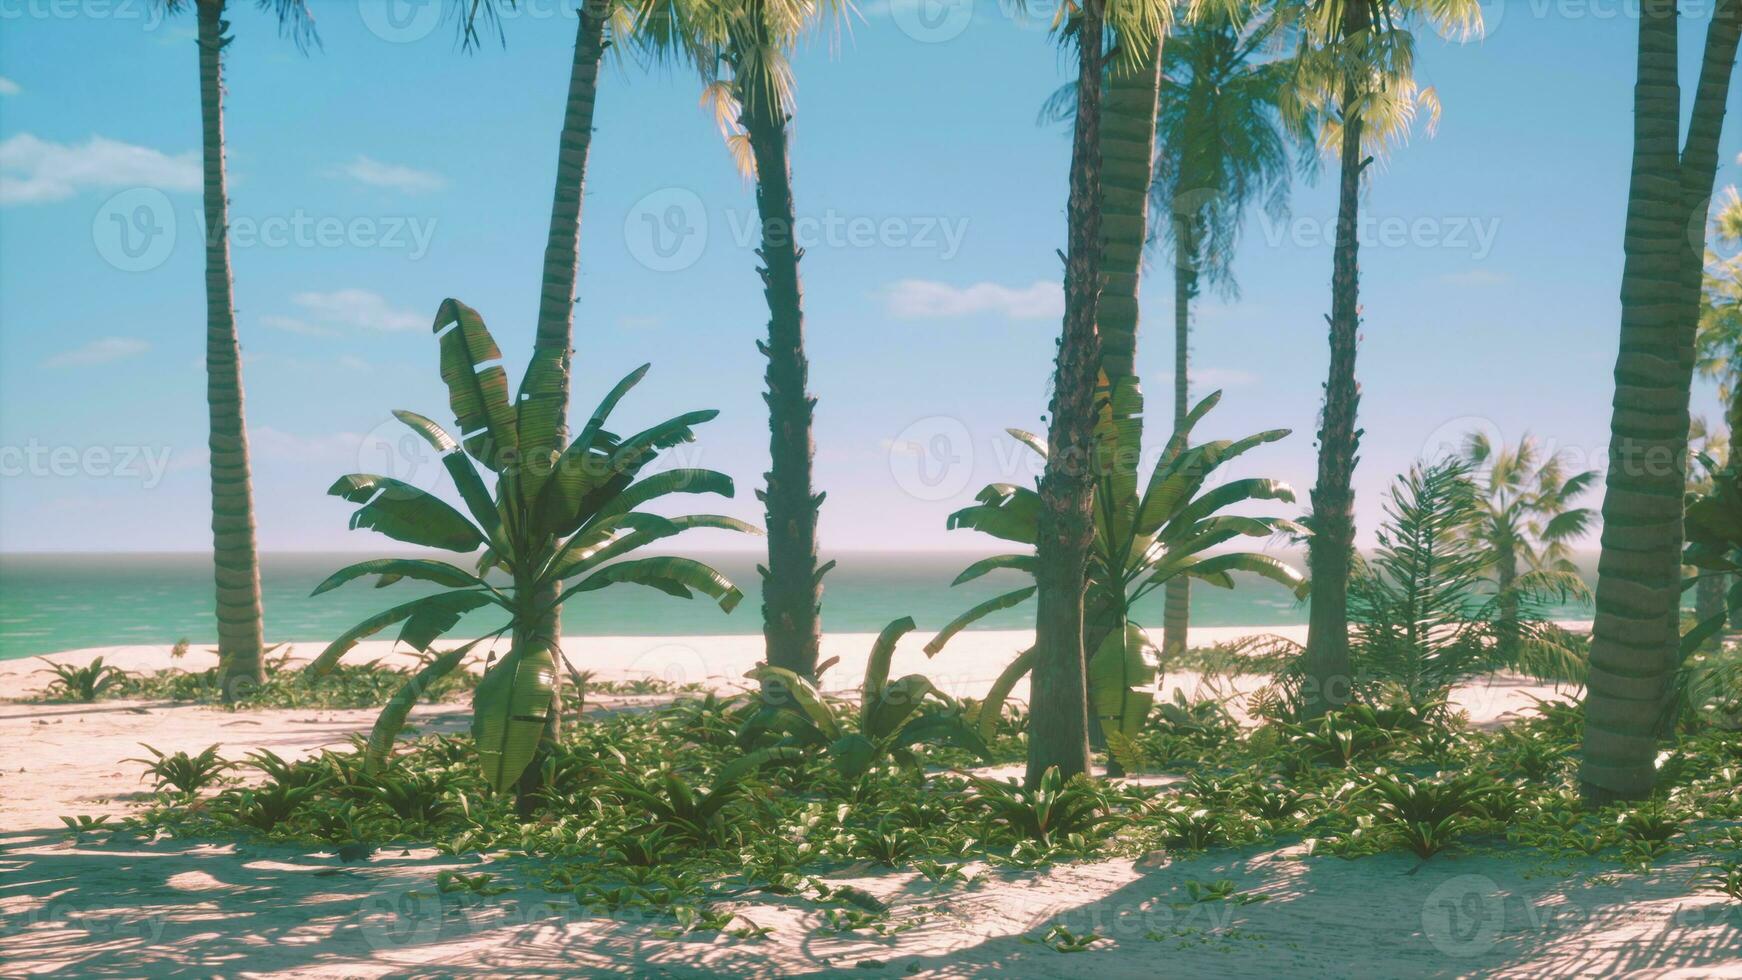 parc de la plage sud de miami avec palmiers photo